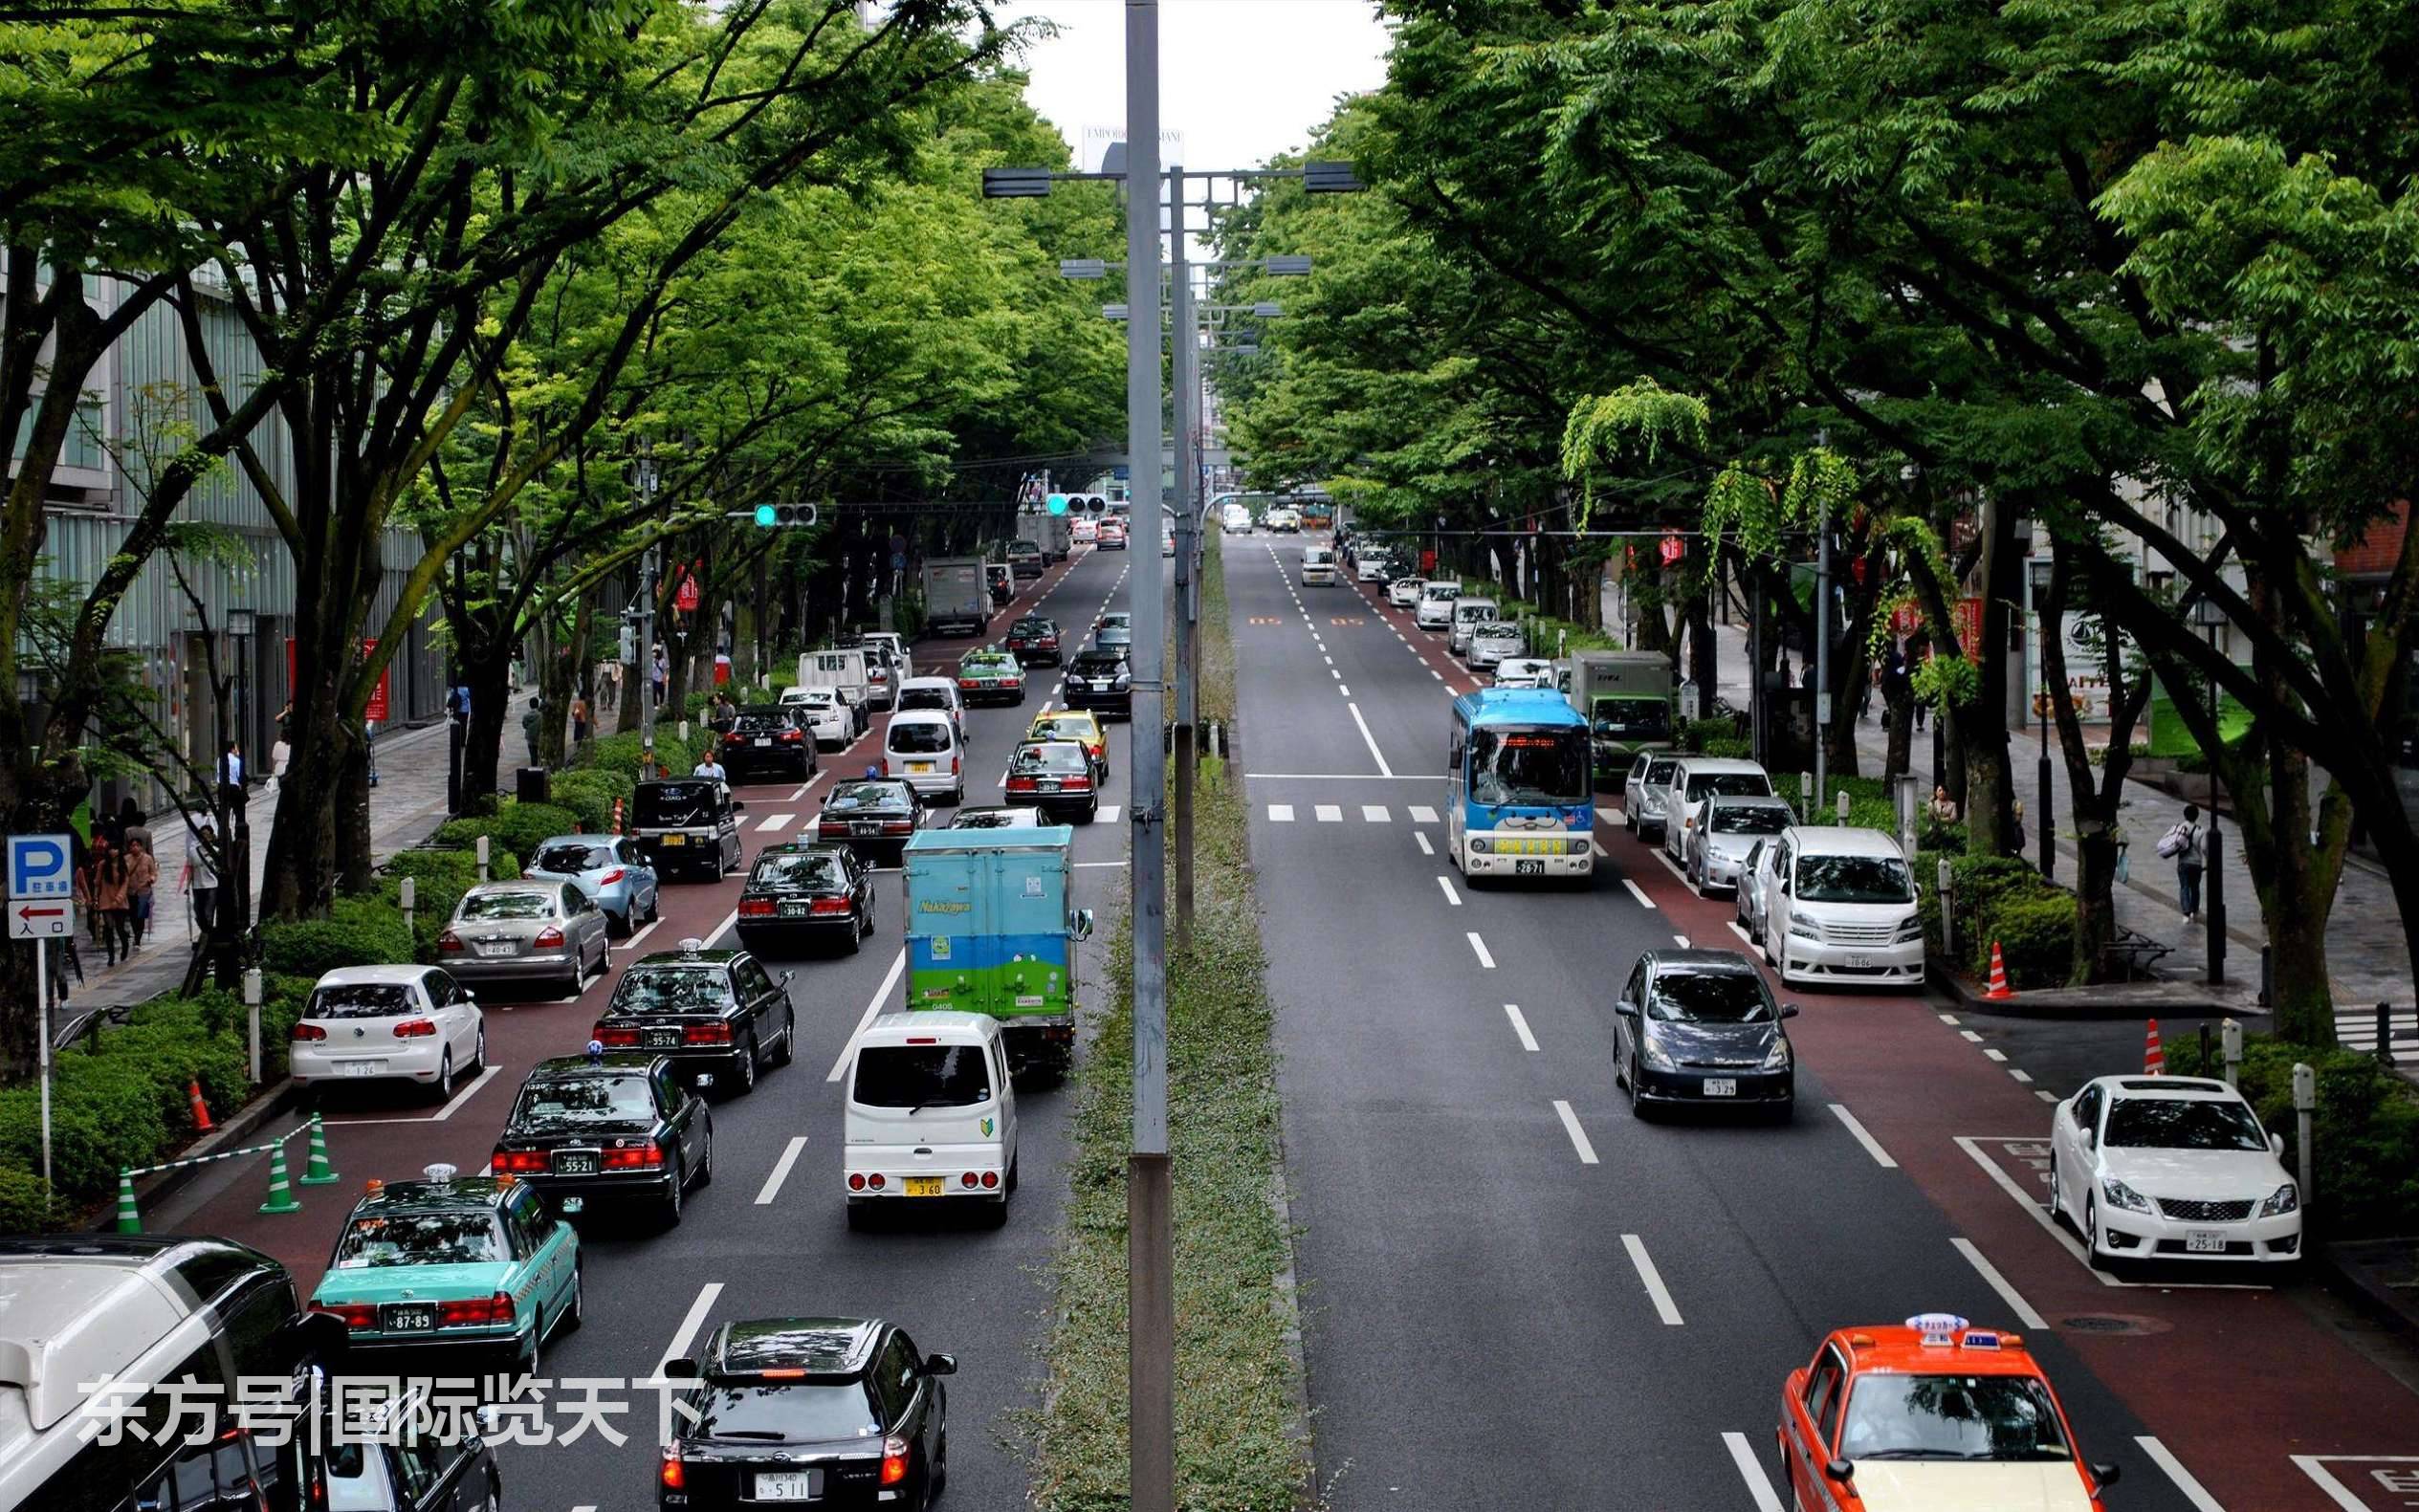 图为日本城市的街道,多辆汽车在有秩序地向前推行,马路上同样看不到